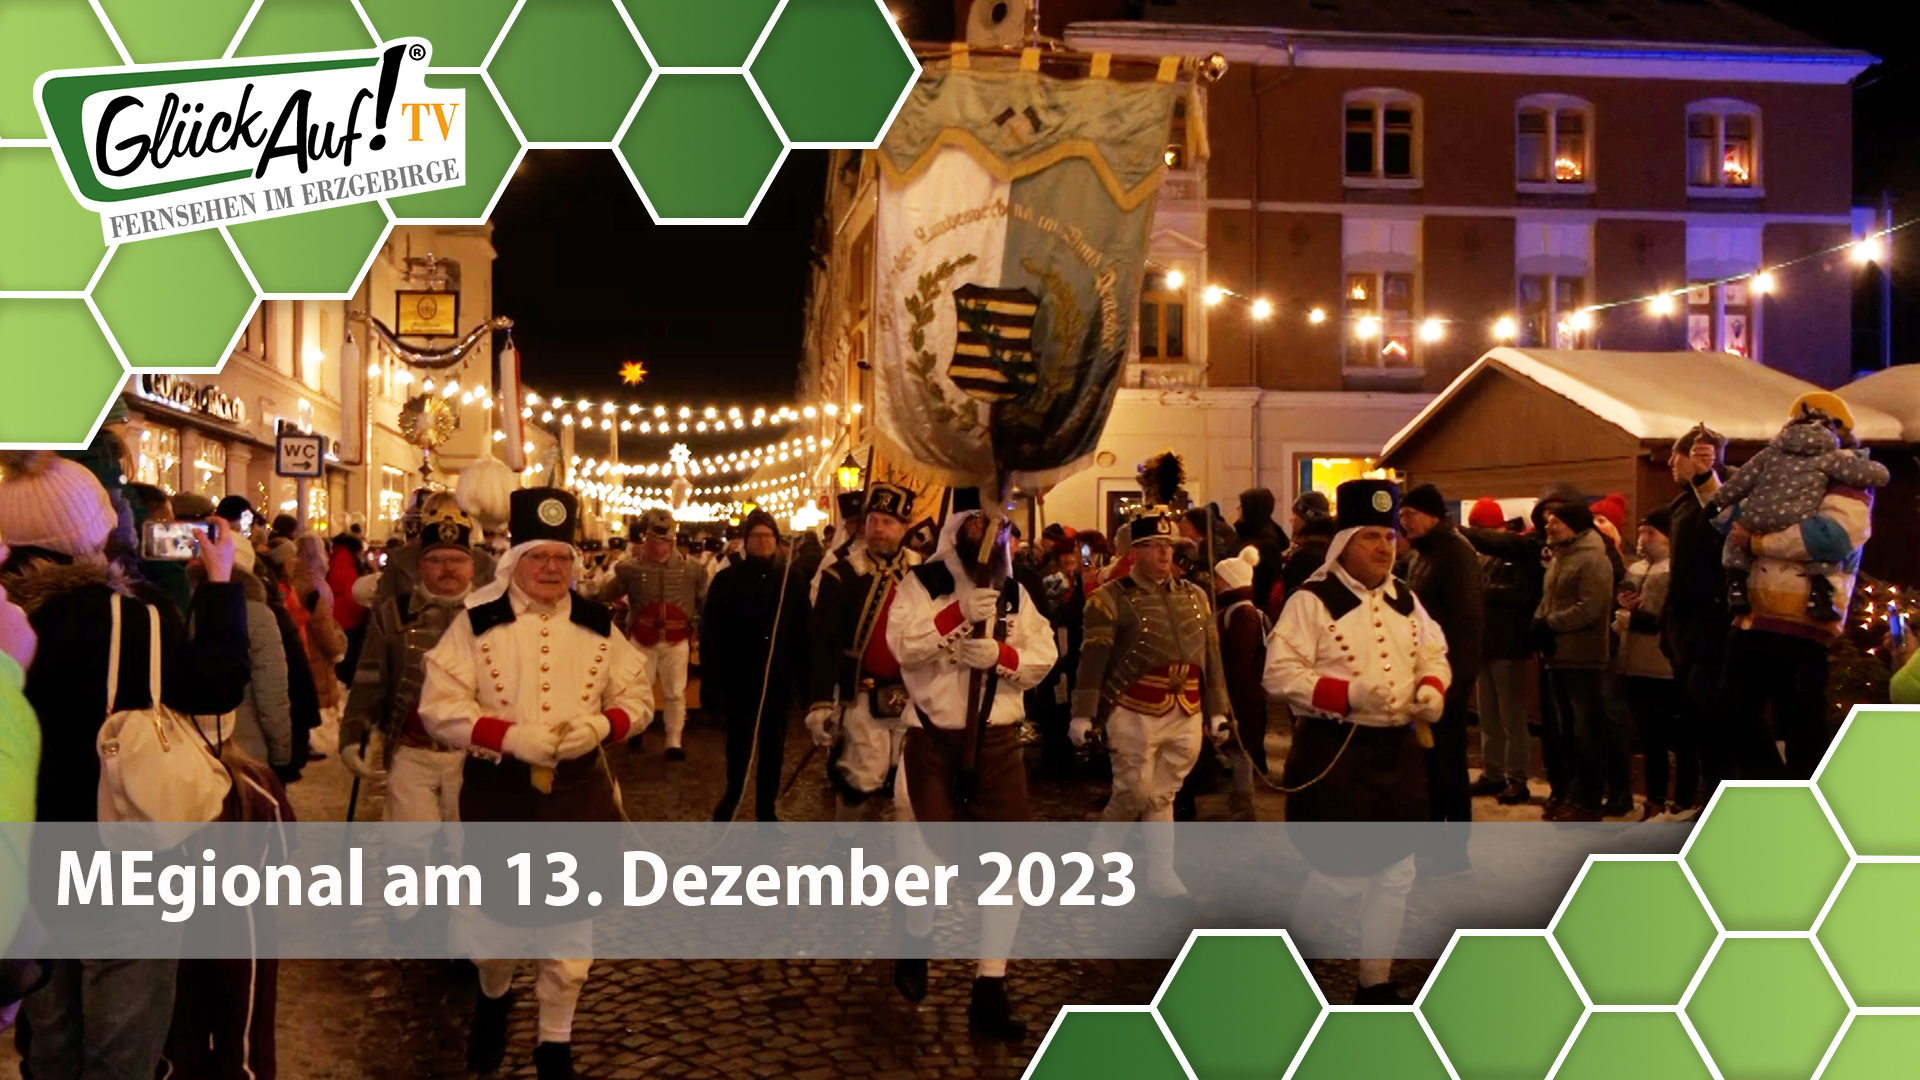 MEgional am 13. Dezember 2023 mit der Bergparade des Sächsischen Landesverbandes der Bergmanns-, Hütten- und Knappenvereine in Olbernhau